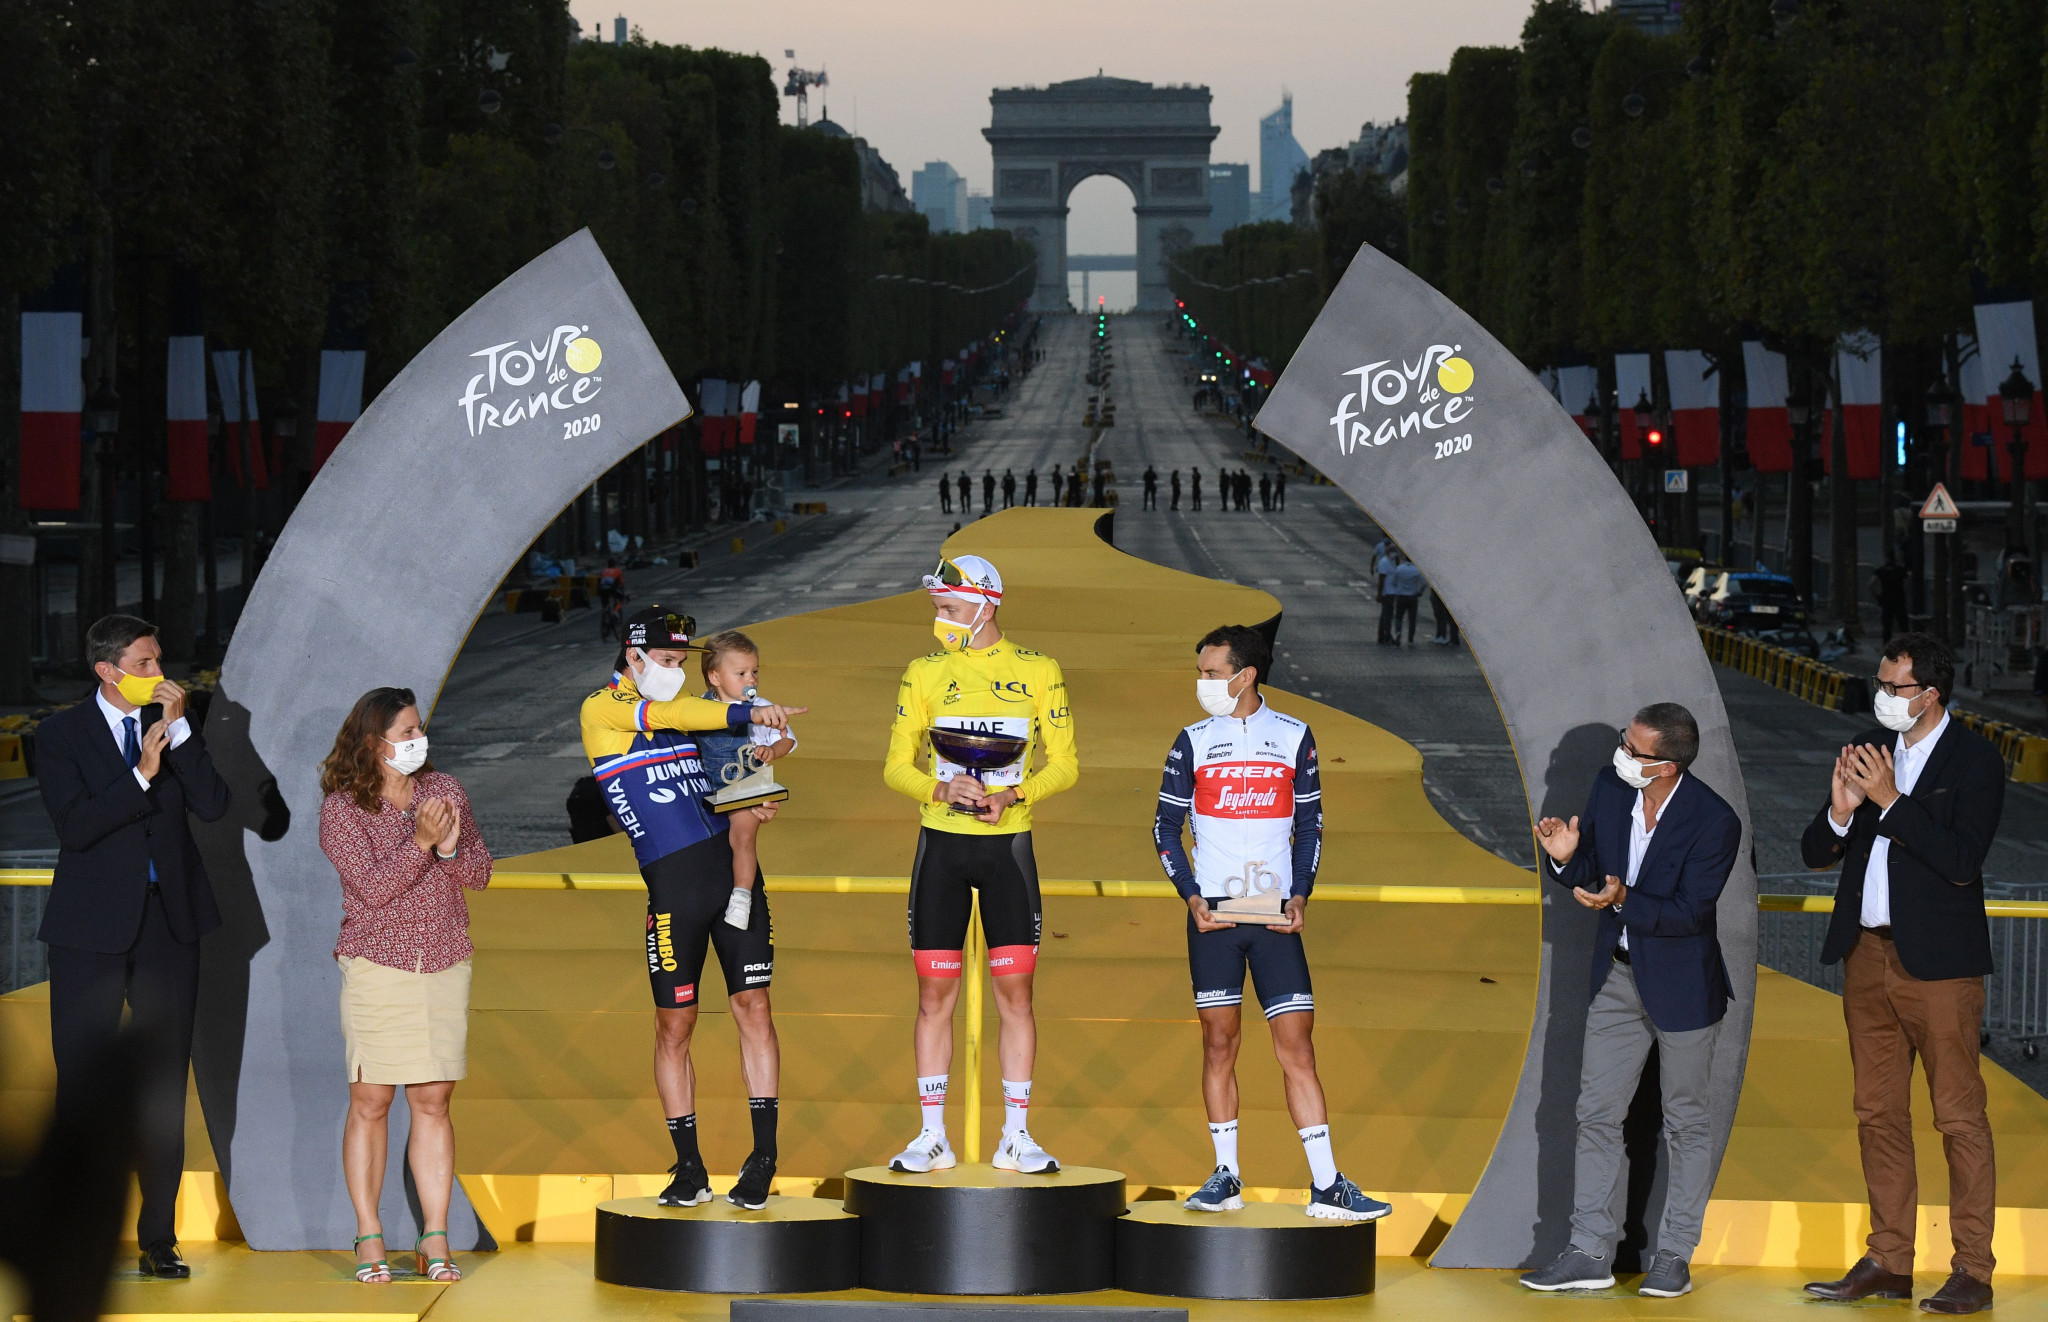 Victory to arrive in Paris, says Tour de France race director